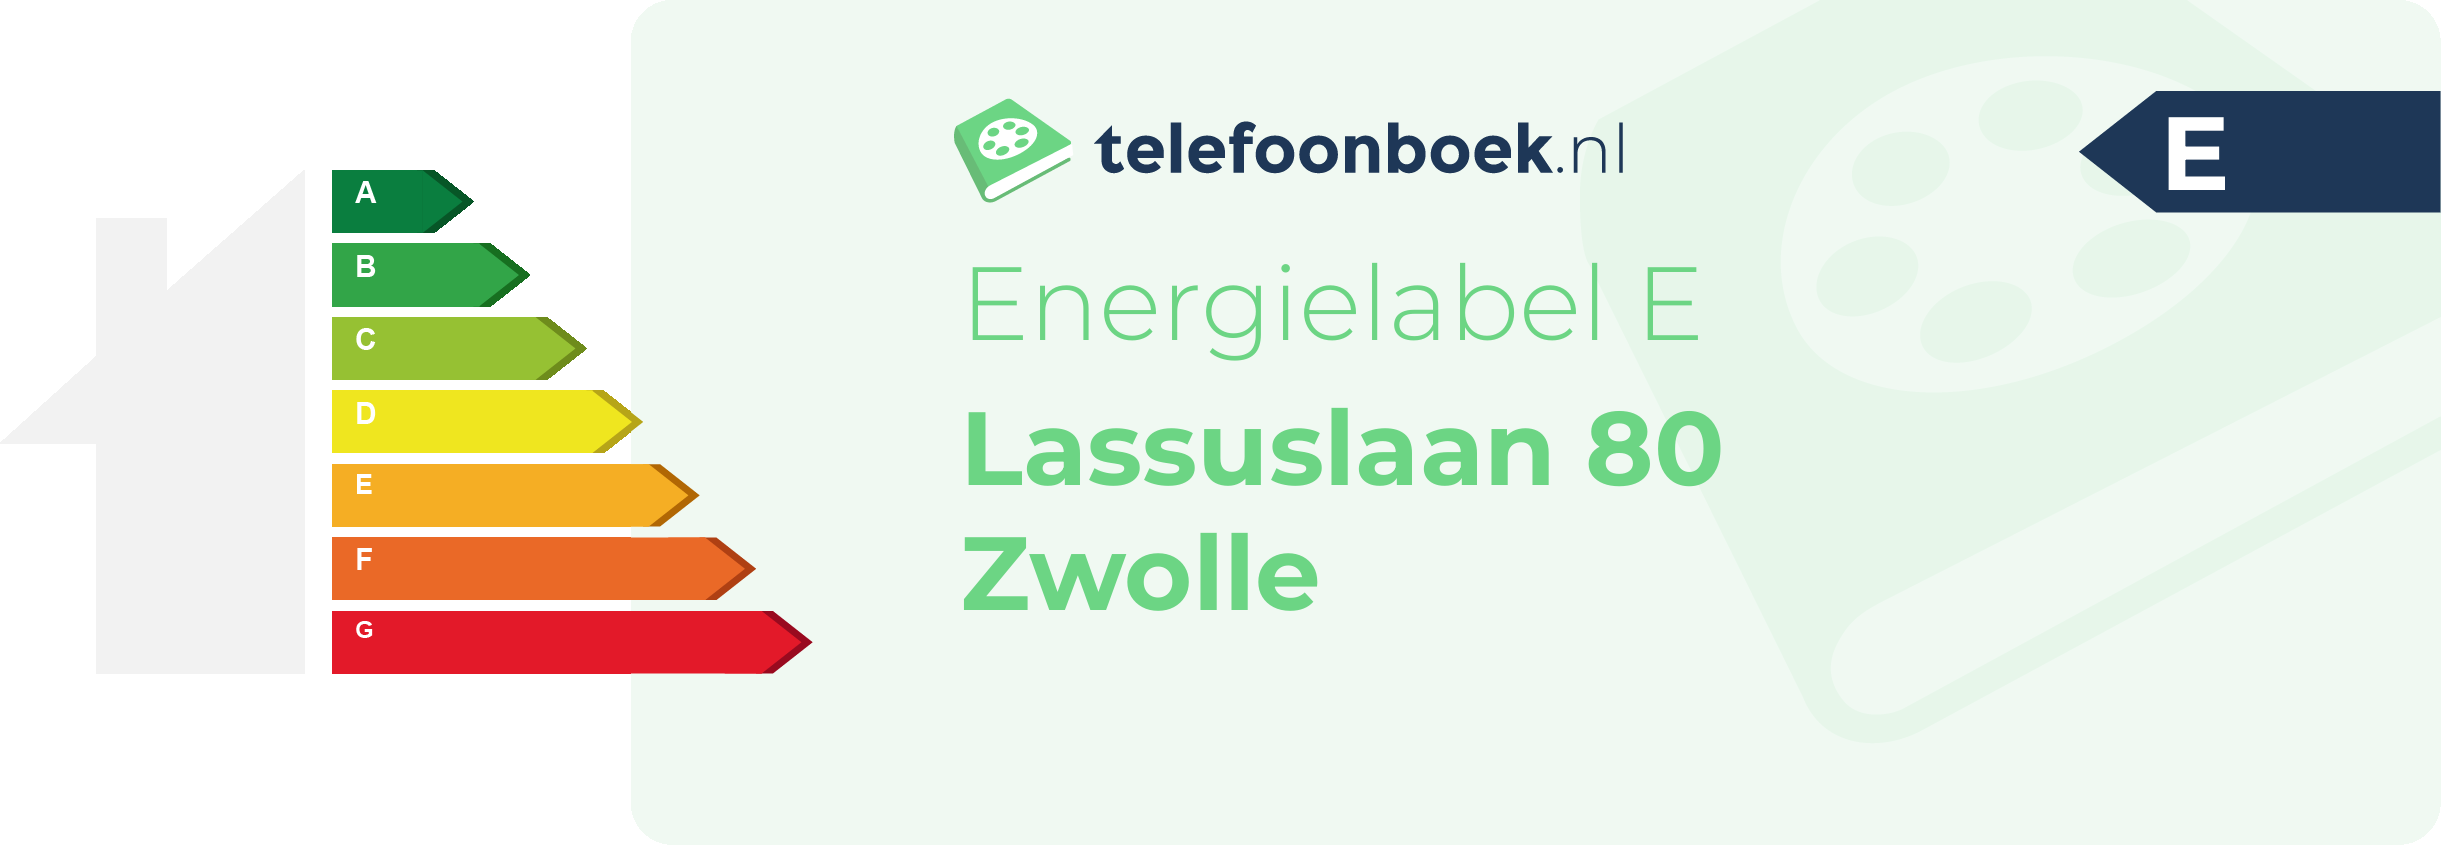 Energielabel Lassuslaan 80 Zwolle